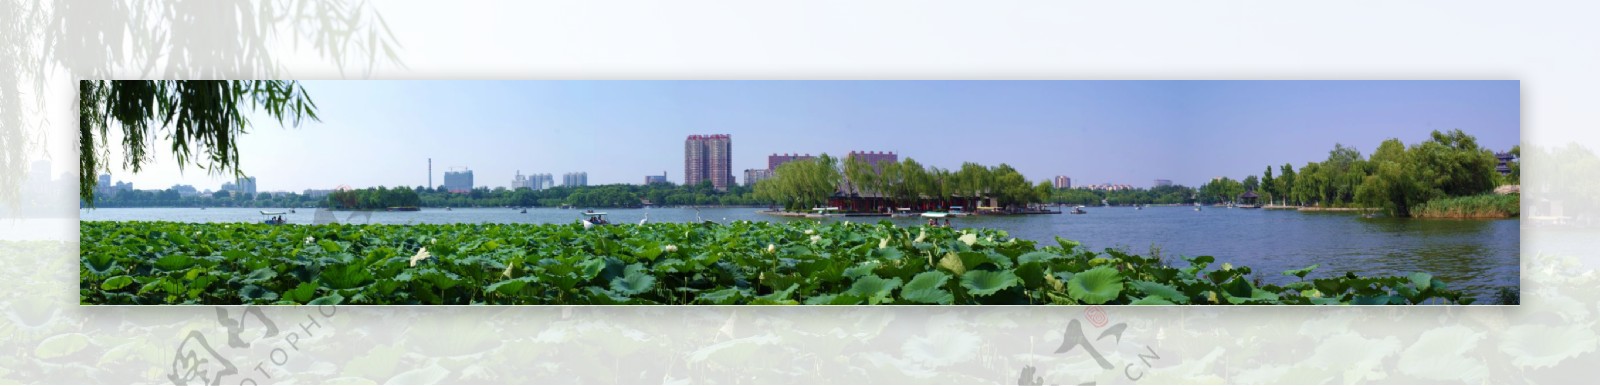 大明湖全景图